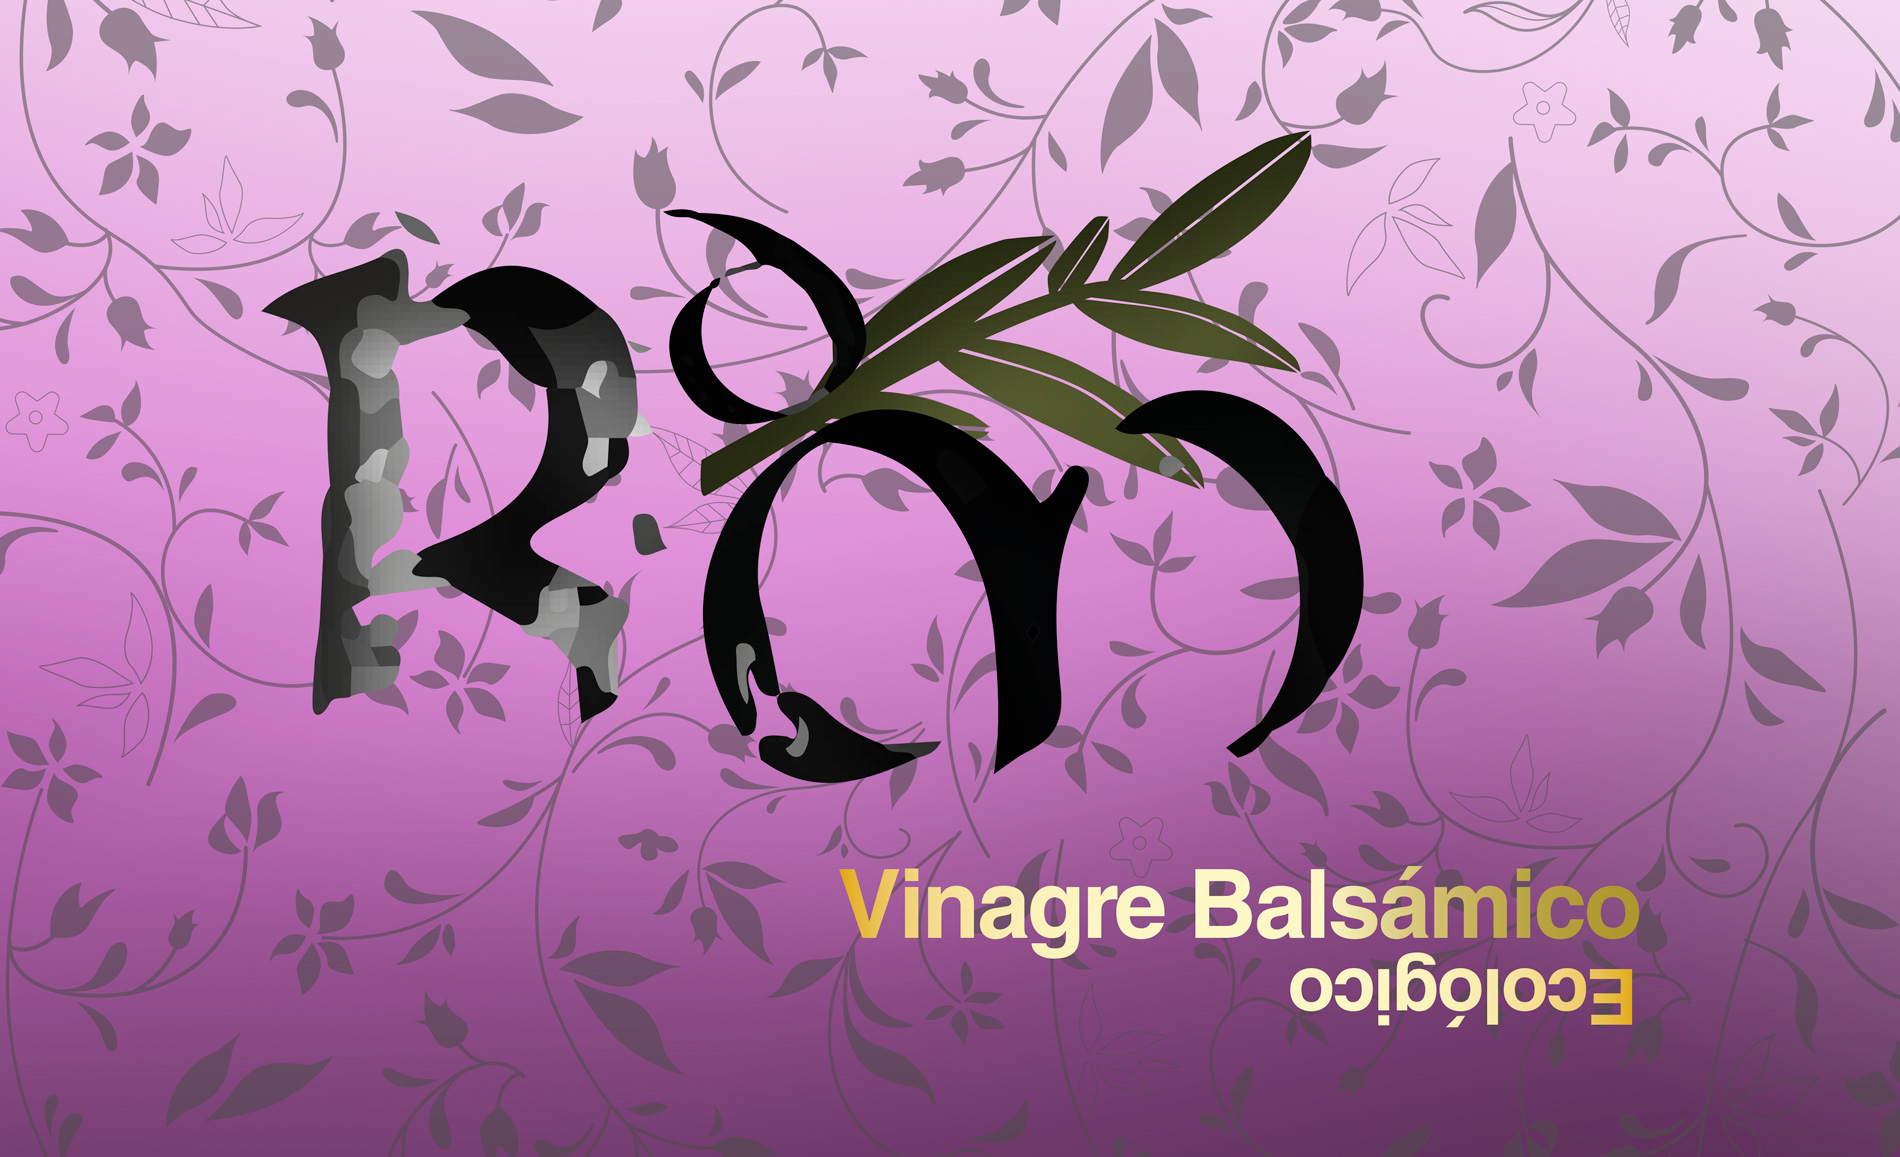 Diseño gráfico y creativo de etiquetas de aceite de oliva virgen extra para la marca VINAGRE RESERVA DEL MOLINO